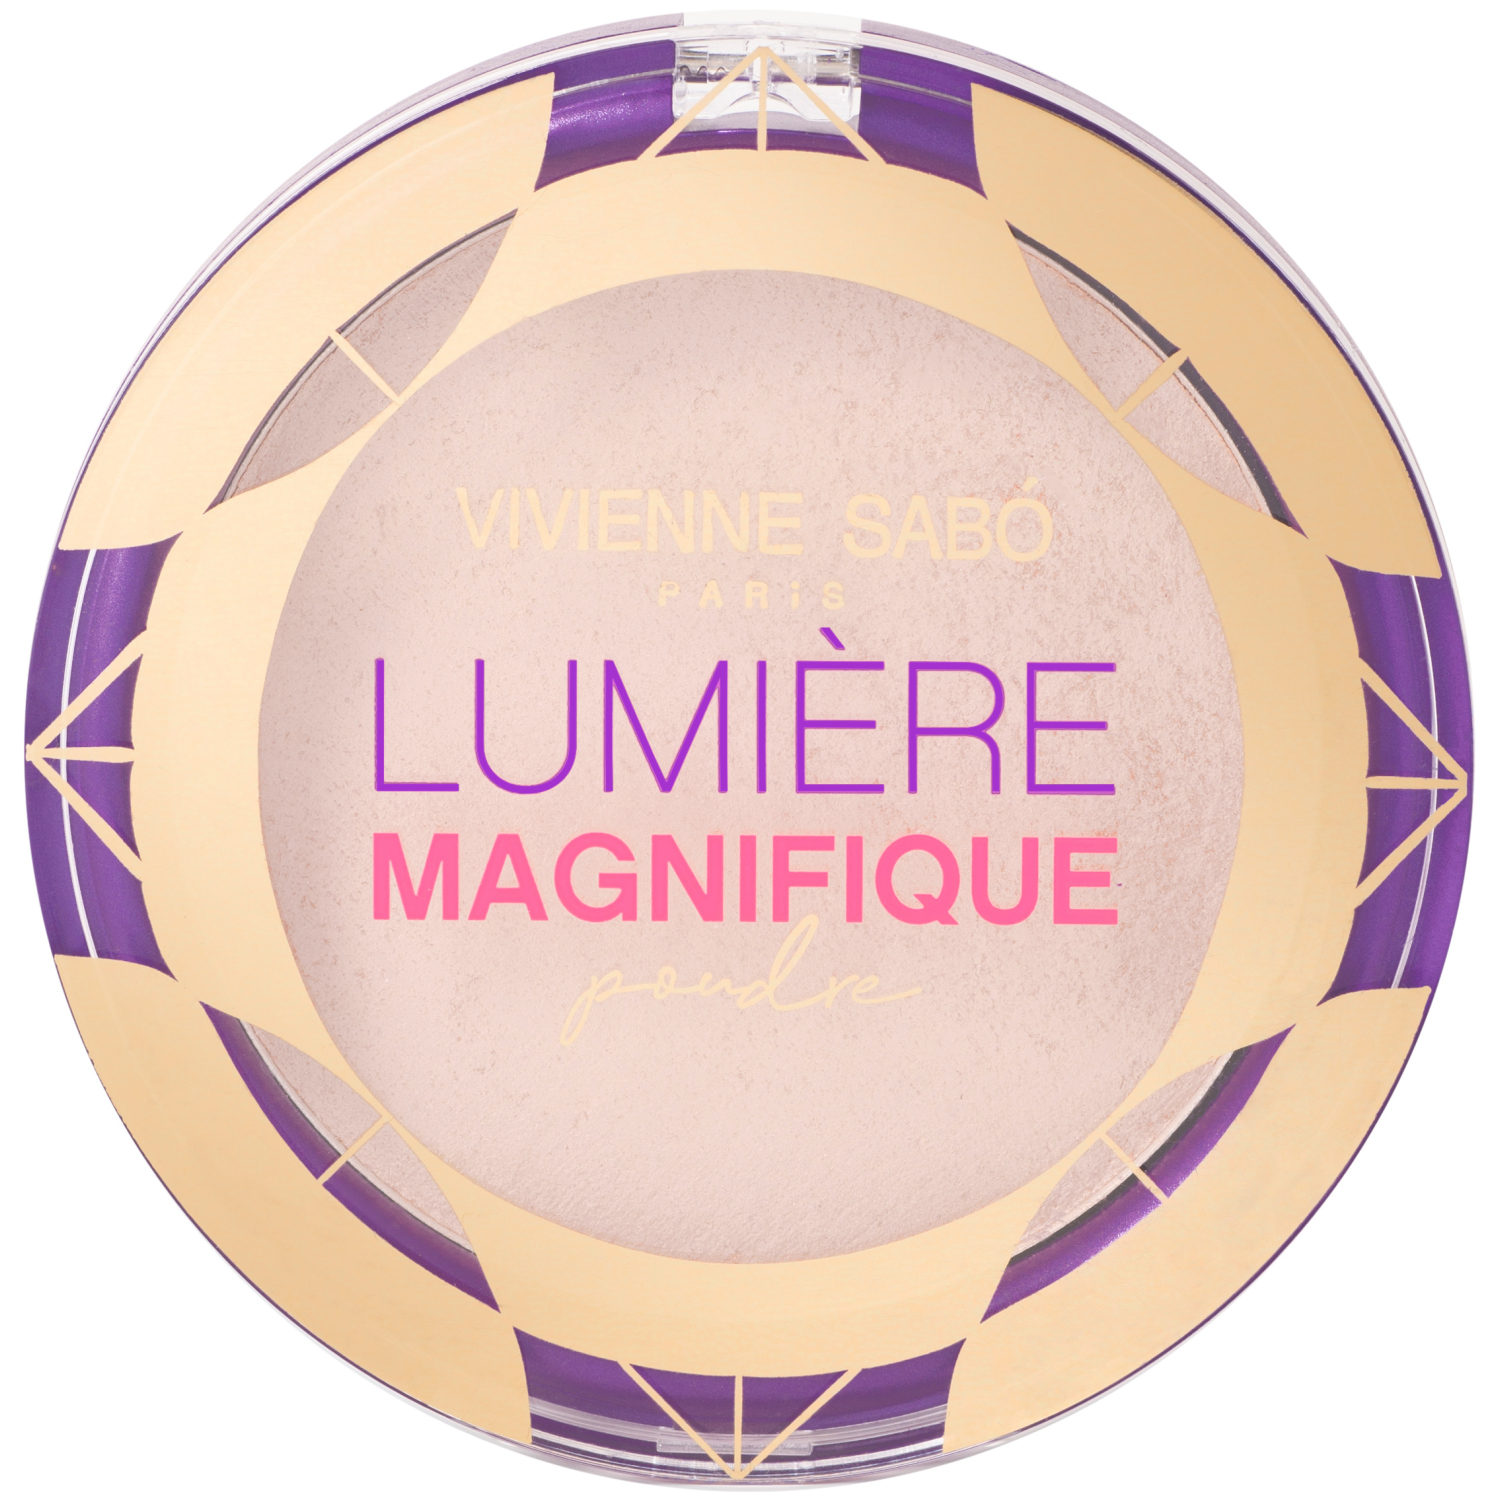 Пудра Vivienne Sabo Lumiere Magnifique, сияющая, бархатистая текстура, эффект мягкого фокуса, тон 01, светло-бежевый, 6гр. relouis кисть косметическая для тональной основы синтетический ворс